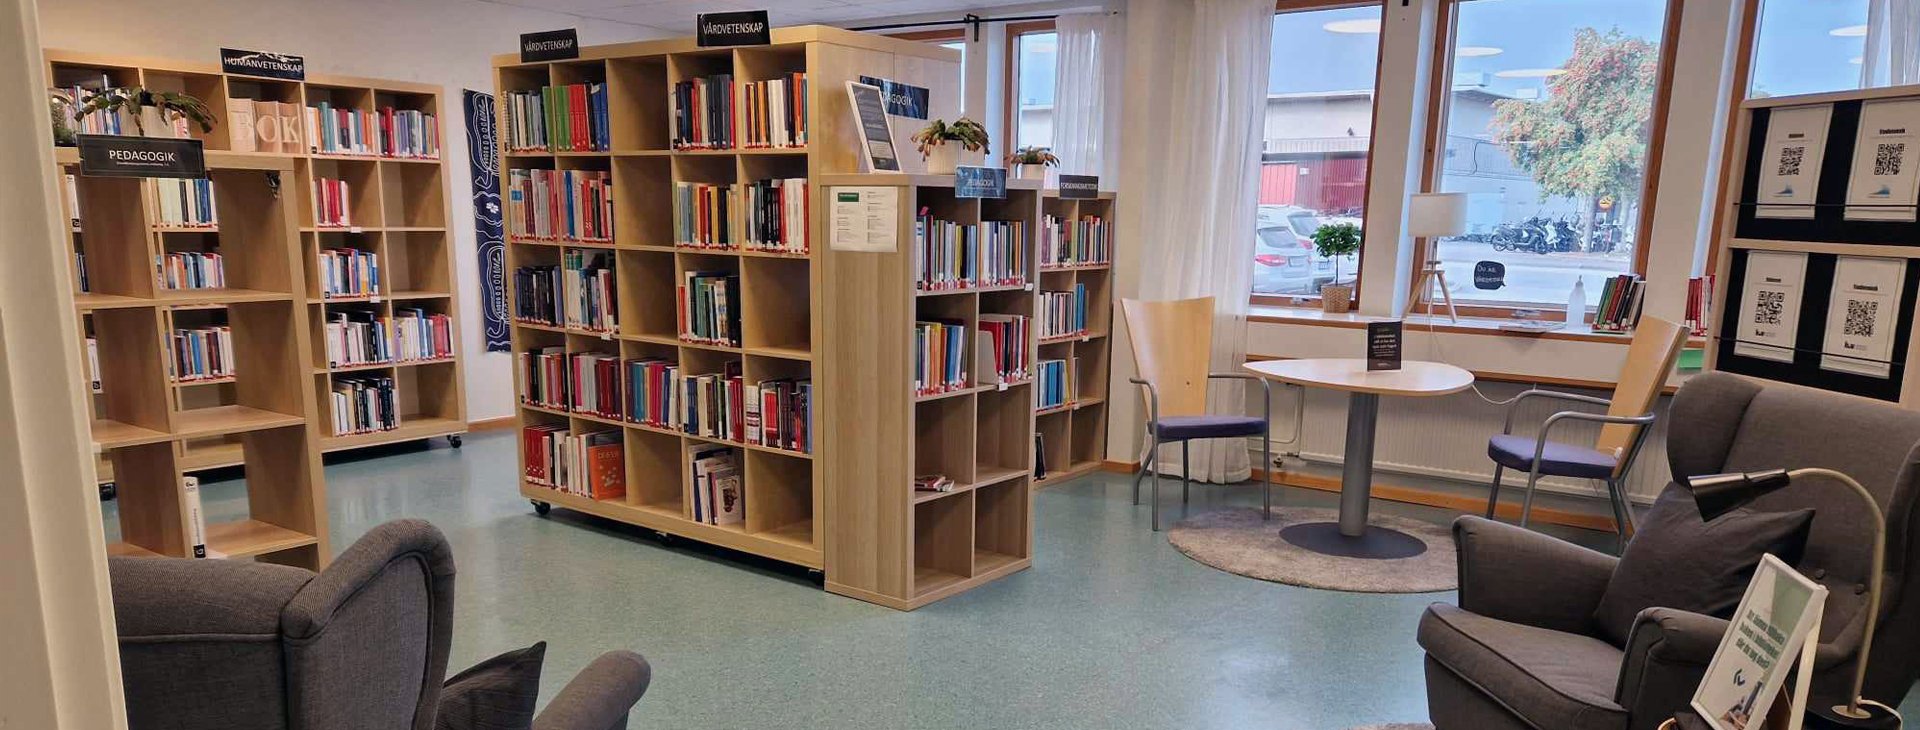 Biblioteket på Campus Västervik.